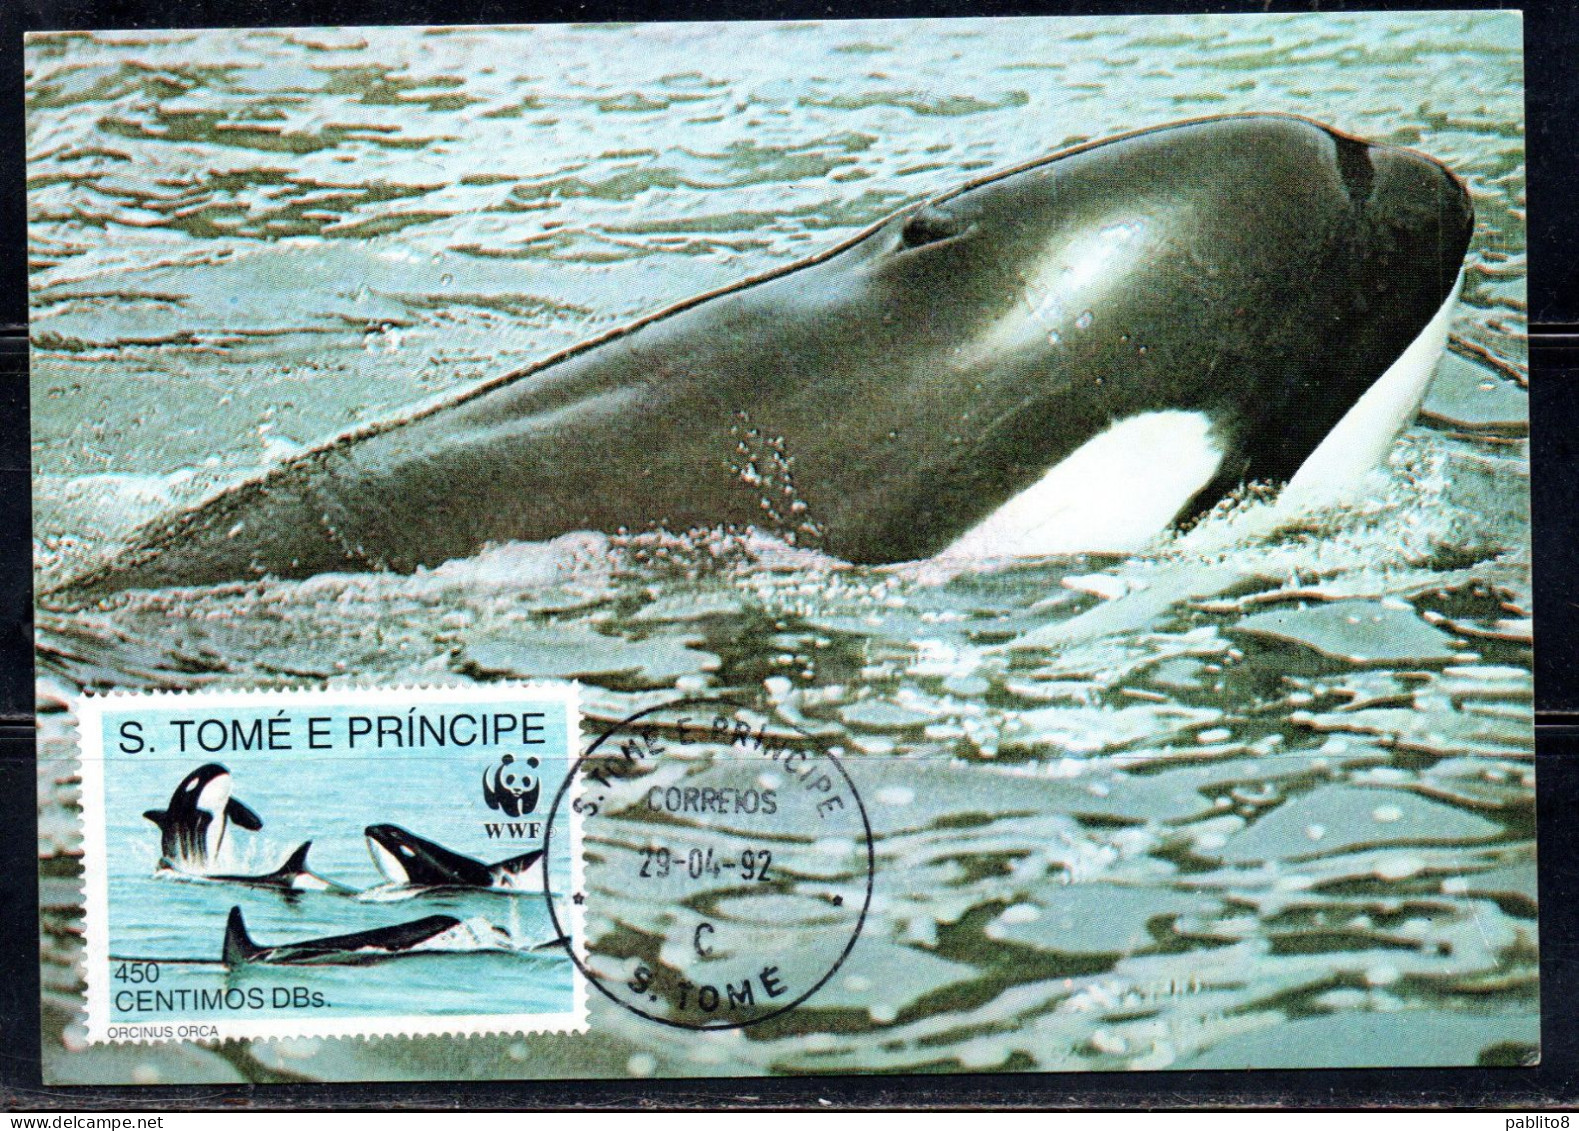 SAO S. SAN TOME' E PRINCIPE 1992 WWF MARINE LIFE FISHES ORCA 450c MAXI MAXIMUM CARD CARTE - Sao Tome And Principe